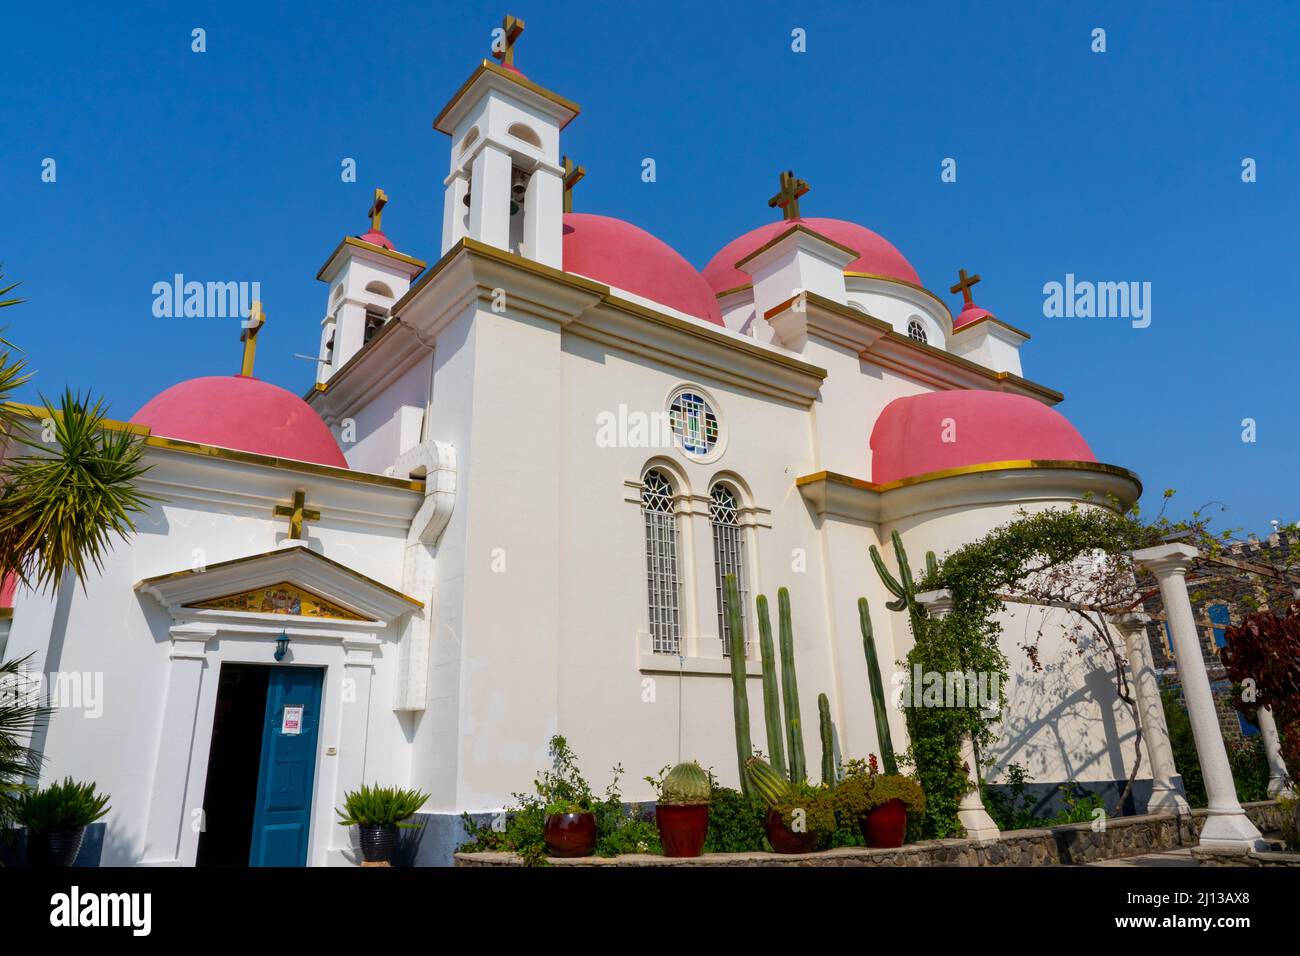 La Chiesa greco-ortodossa dei Santi Apostoli, in uso comune semplicemente Chiesa degli Apostoli è la chiesa al centro del monastro greco-ortodosso Foto Stock